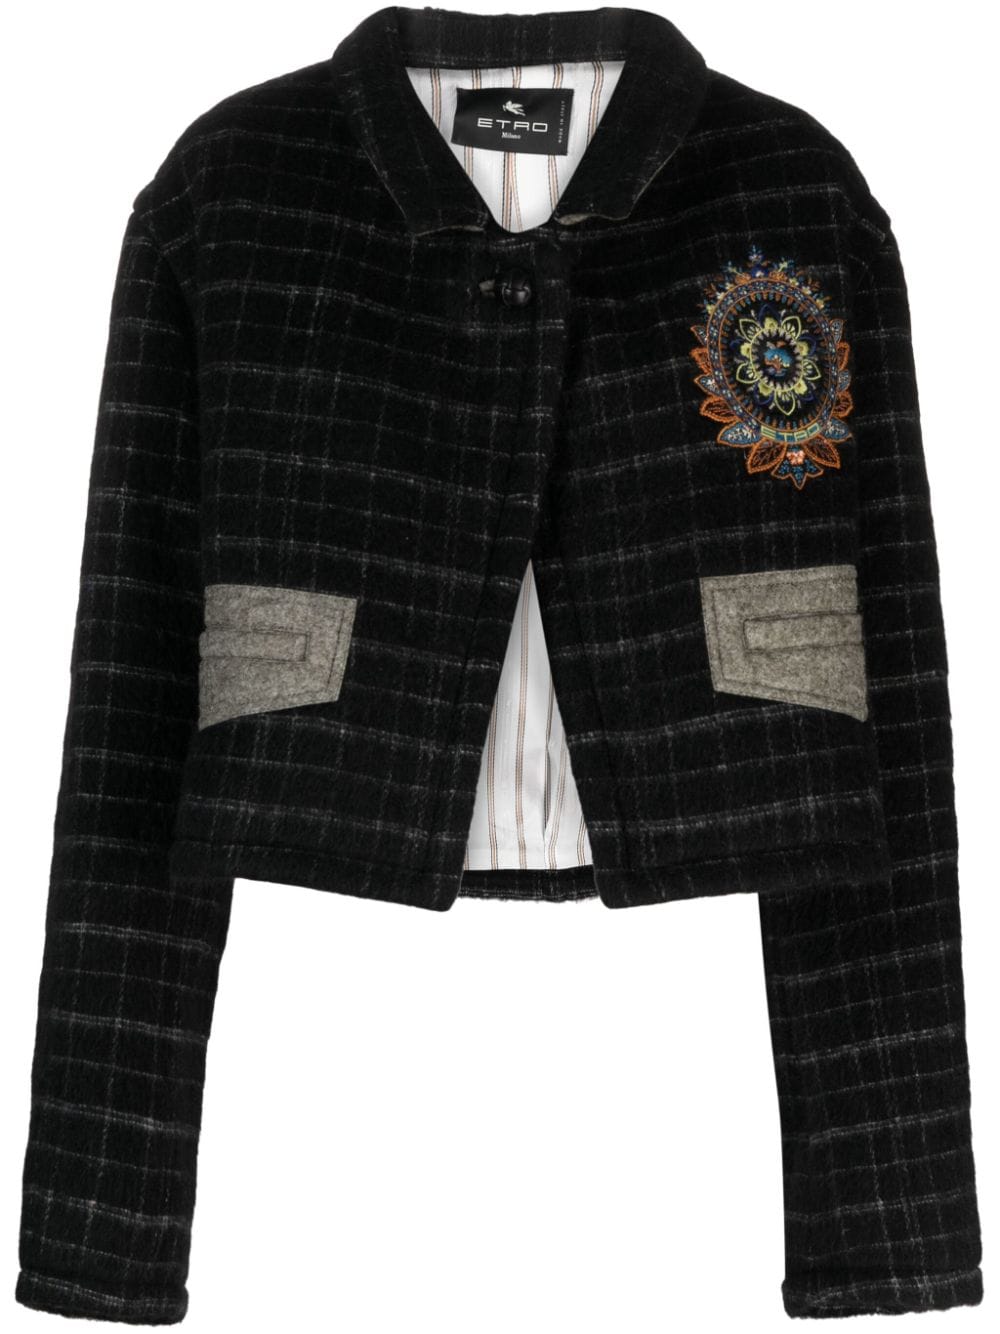 Áo khoác dài họa tiết hoa làm tắc kè (Cropped Jacket) dành cho nữ, đường dệt đen từ hỗn hợp len